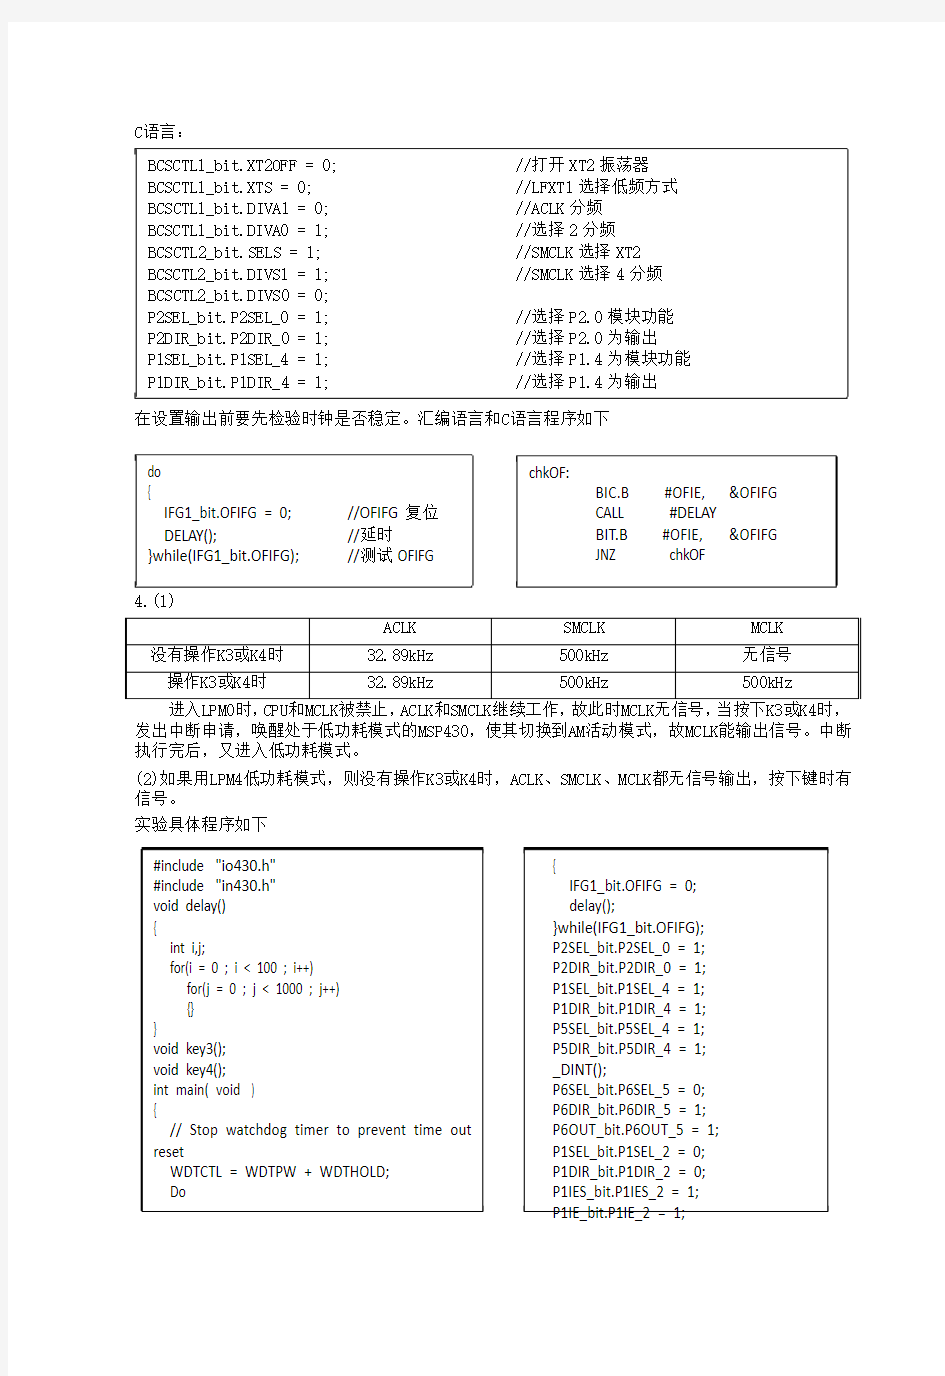 清华大学计算机硬件基础实验8、9报告